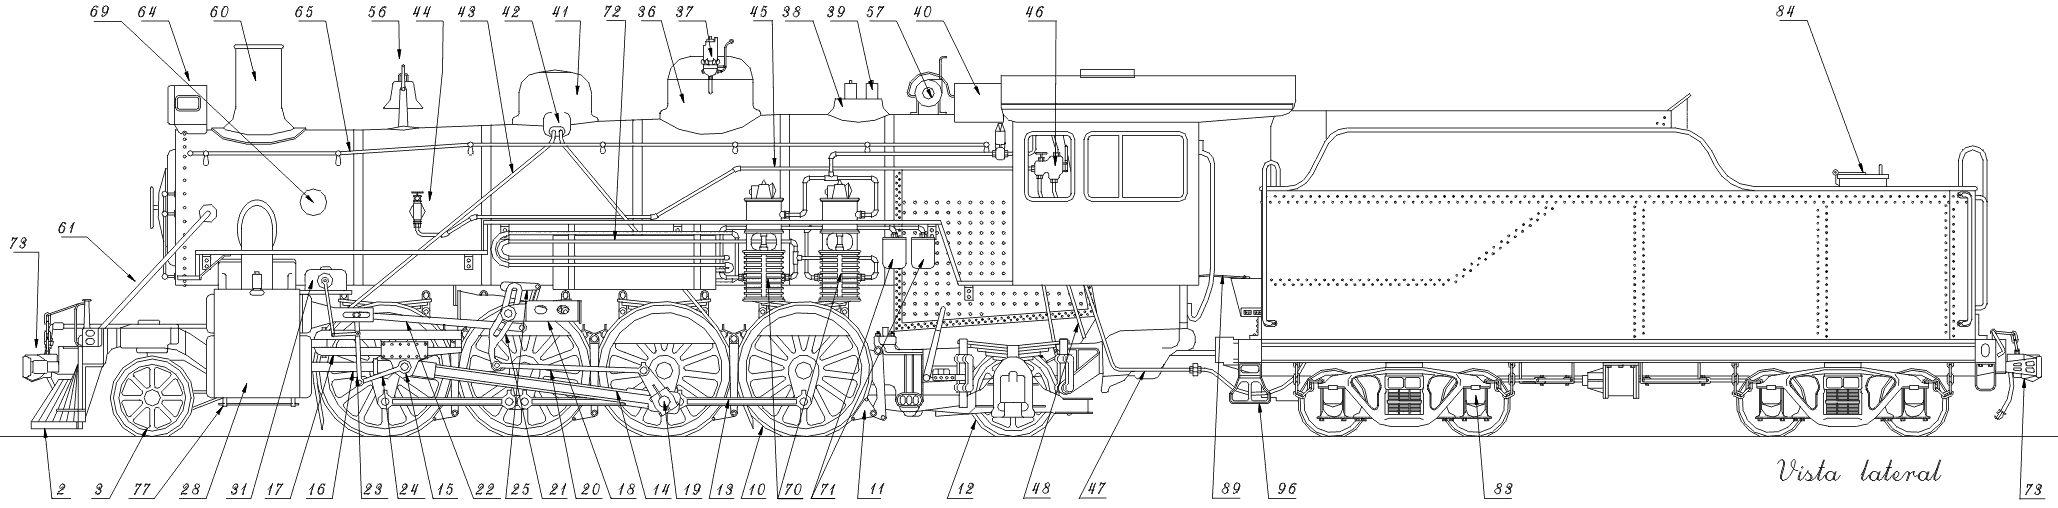 Vista de perfil da locomotiva Mikado e suas partes com indicações numeradas